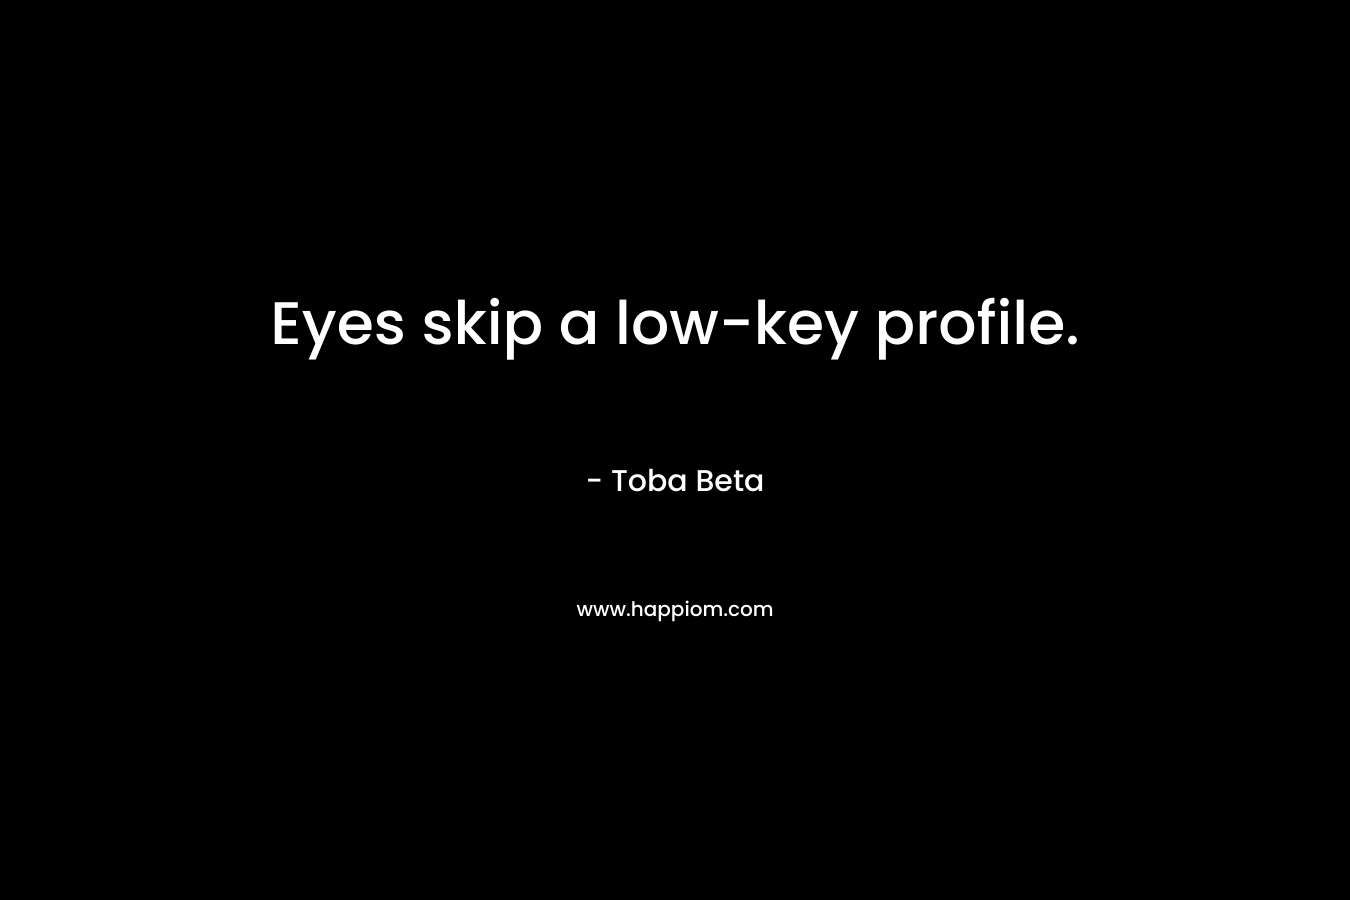 Eyes skip a low-key profile. – Toba Beta